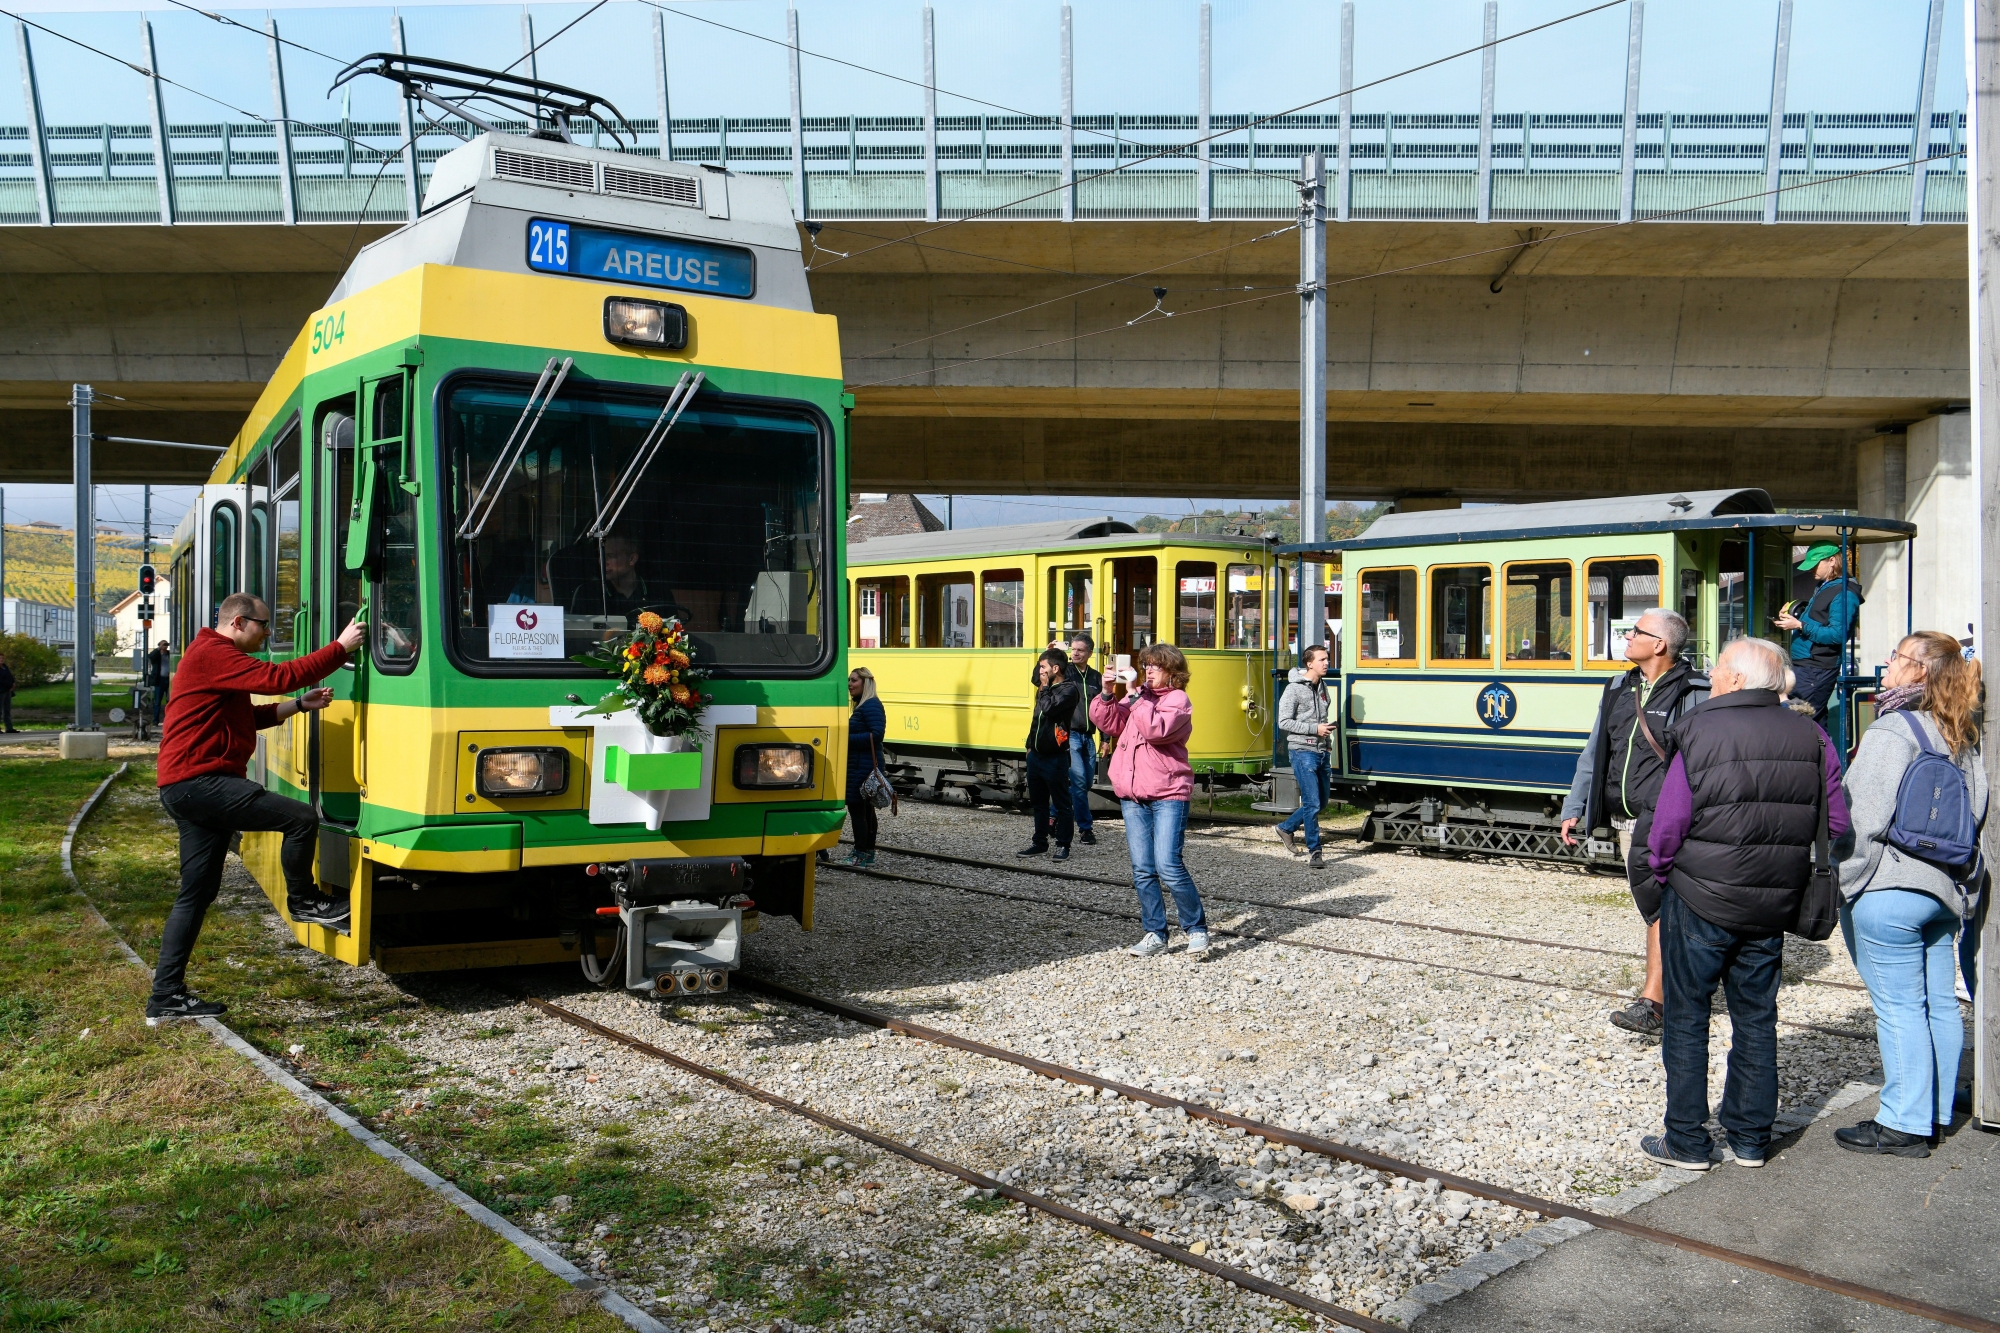 La motrice 504 était accompagnée par les autres véhicules historiques du Musée du tram.